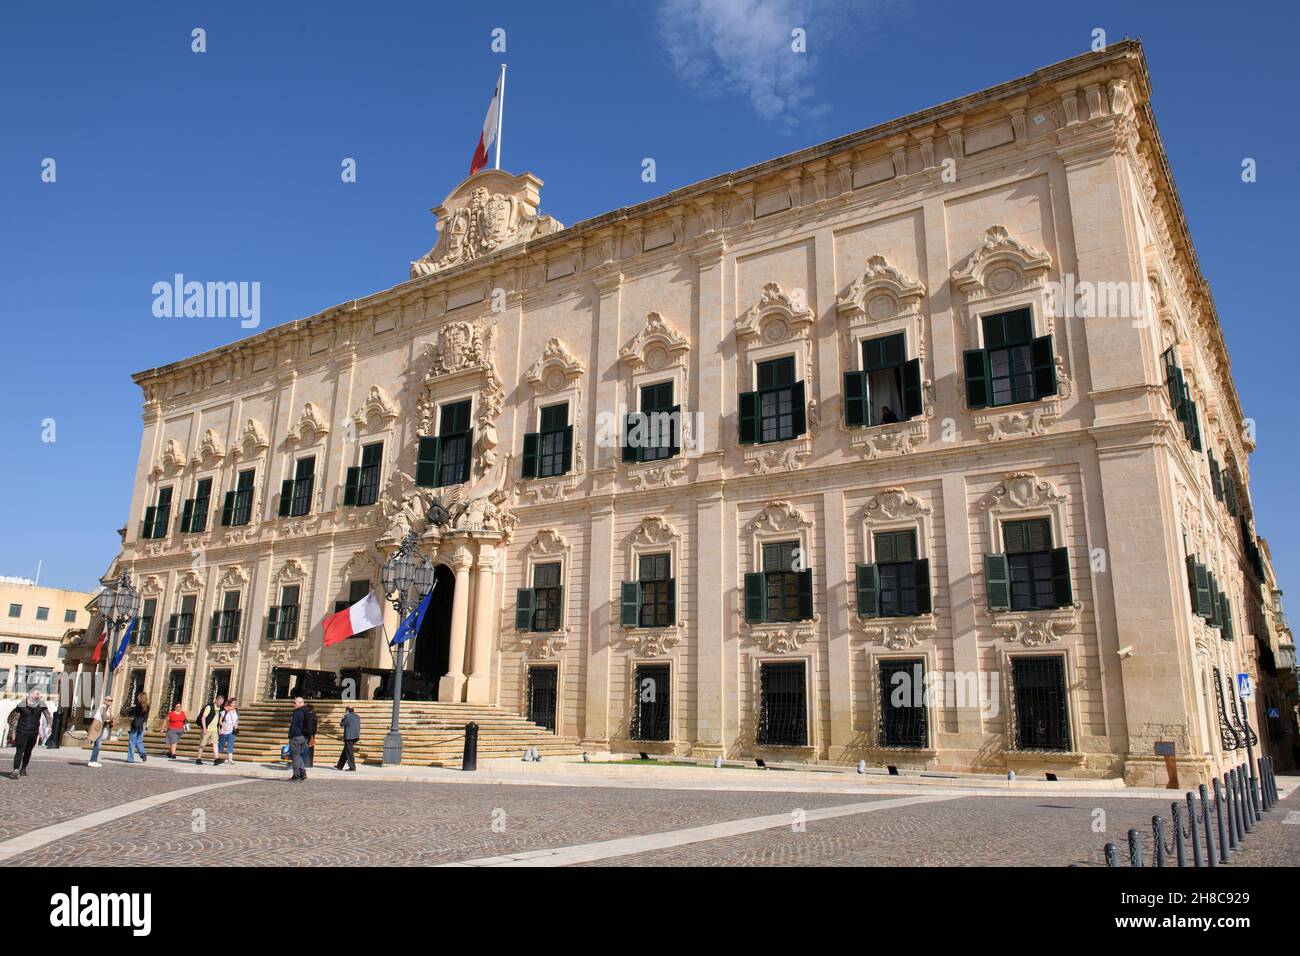 Amtssitz des Premierministers von Malta, Auberge de Castille, Valletta, Malta, Europa Stock Photo